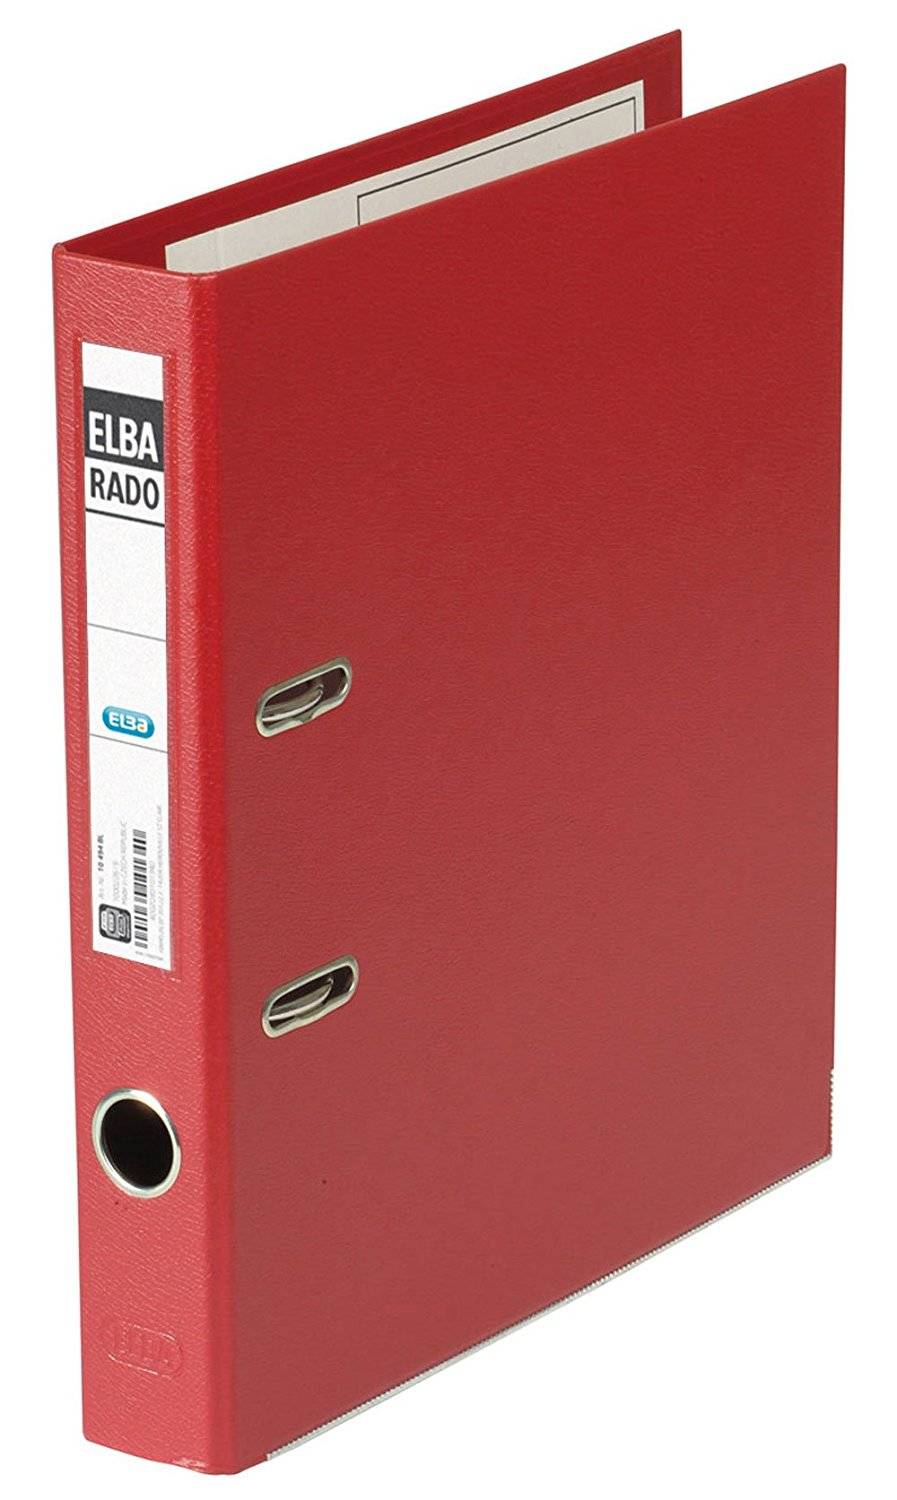 Classeur levier A4 ELBA Rado carton plastifié PVC bord métal Dos 50 mm rouge